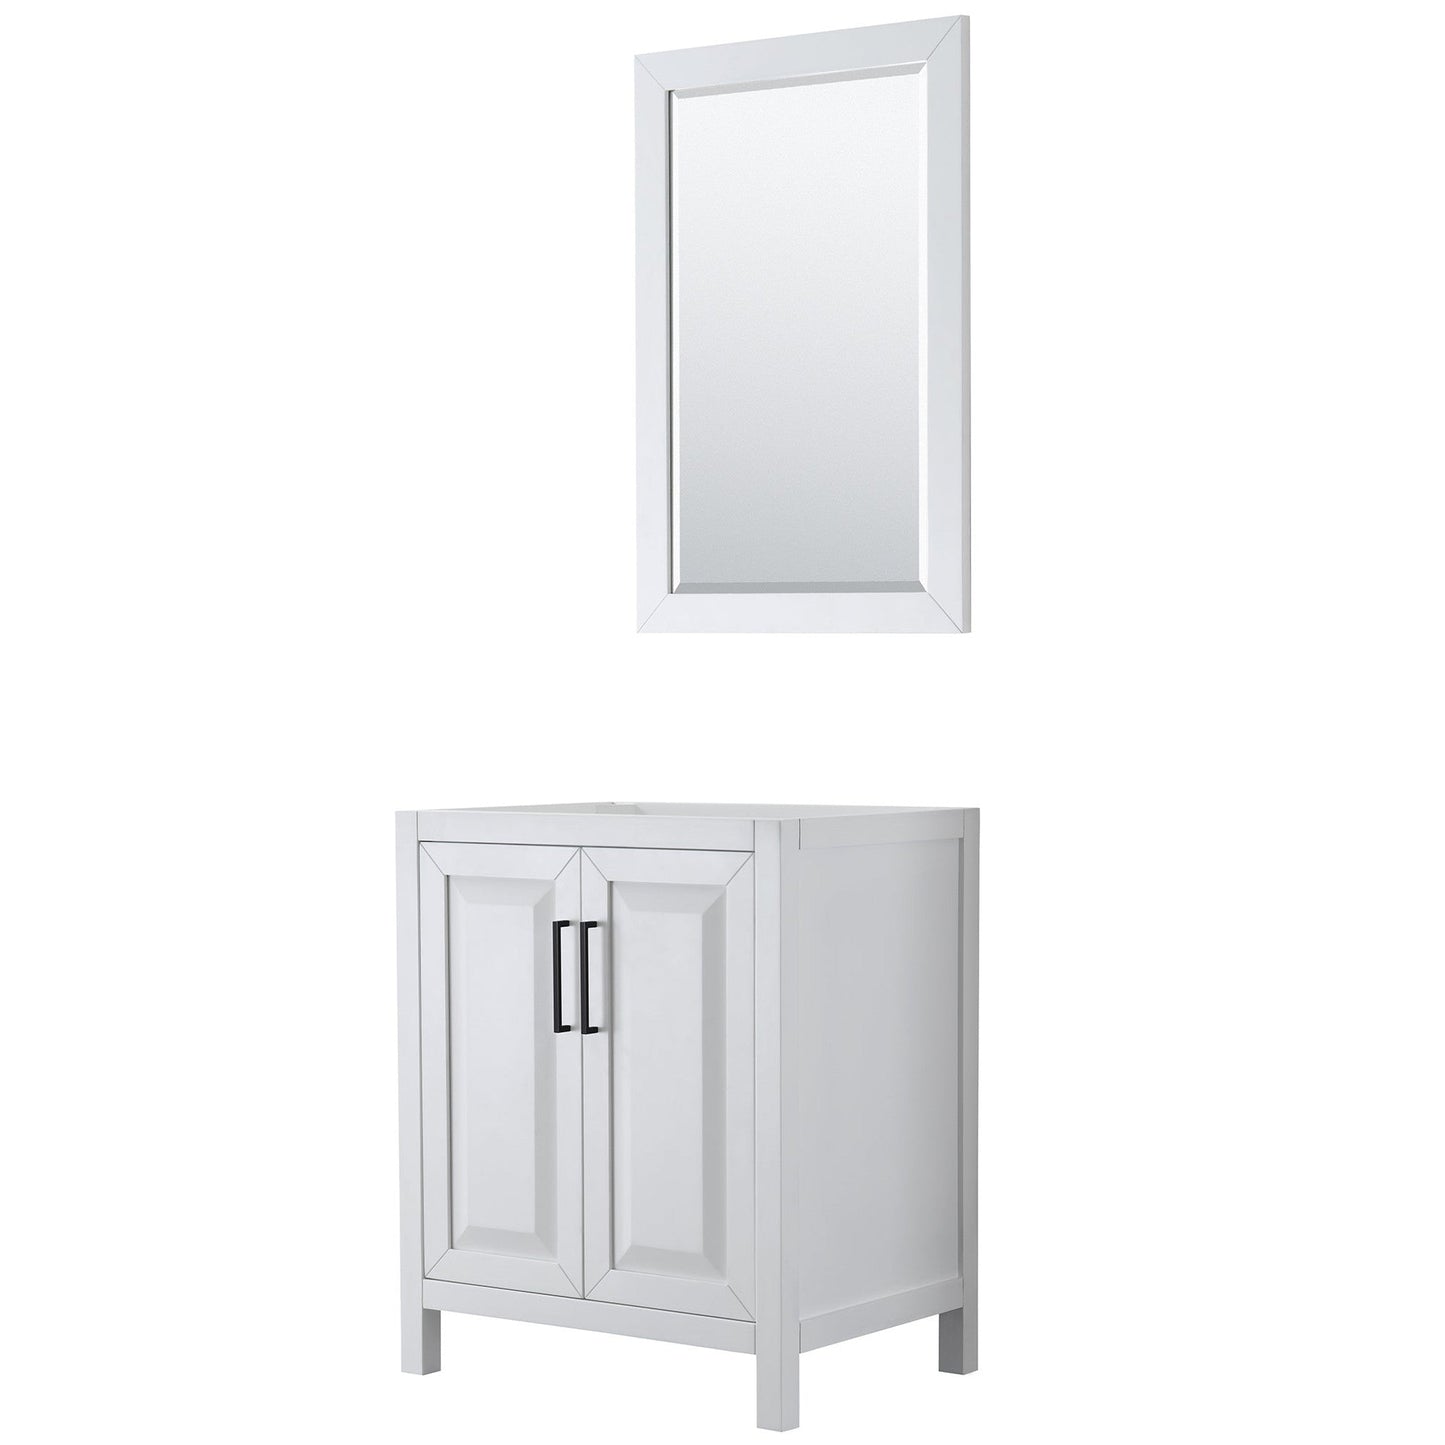 Daria 30" Single Bathroom Vanity in White, No Countertop, No Sink, Matte Black Trim, 24" Mirror